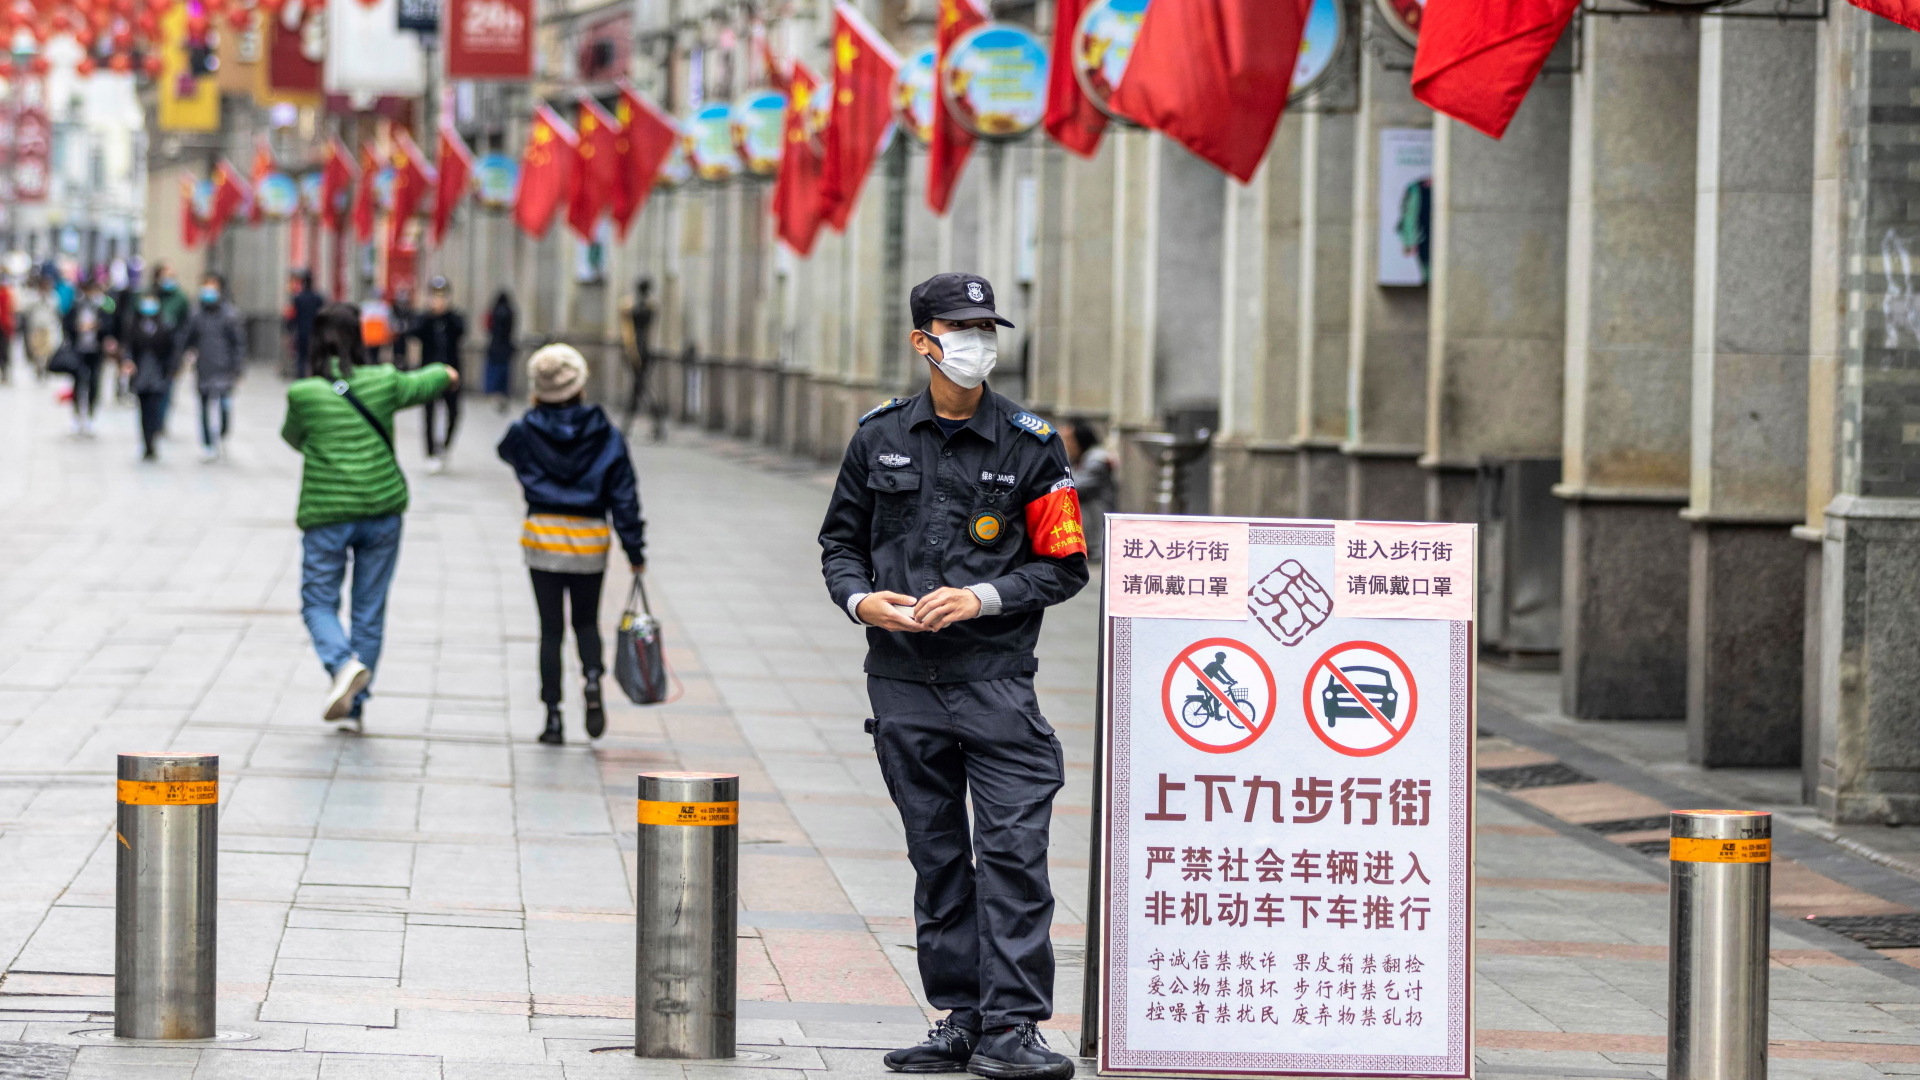 Ein Sicherheitsbeamter in Guangzhou soll verhindern, dass Menschen ohne Gesichtsmaske eine Fußgängerzone betreten. | ALEX PLAVEVSKI/EPA-EFE/REX